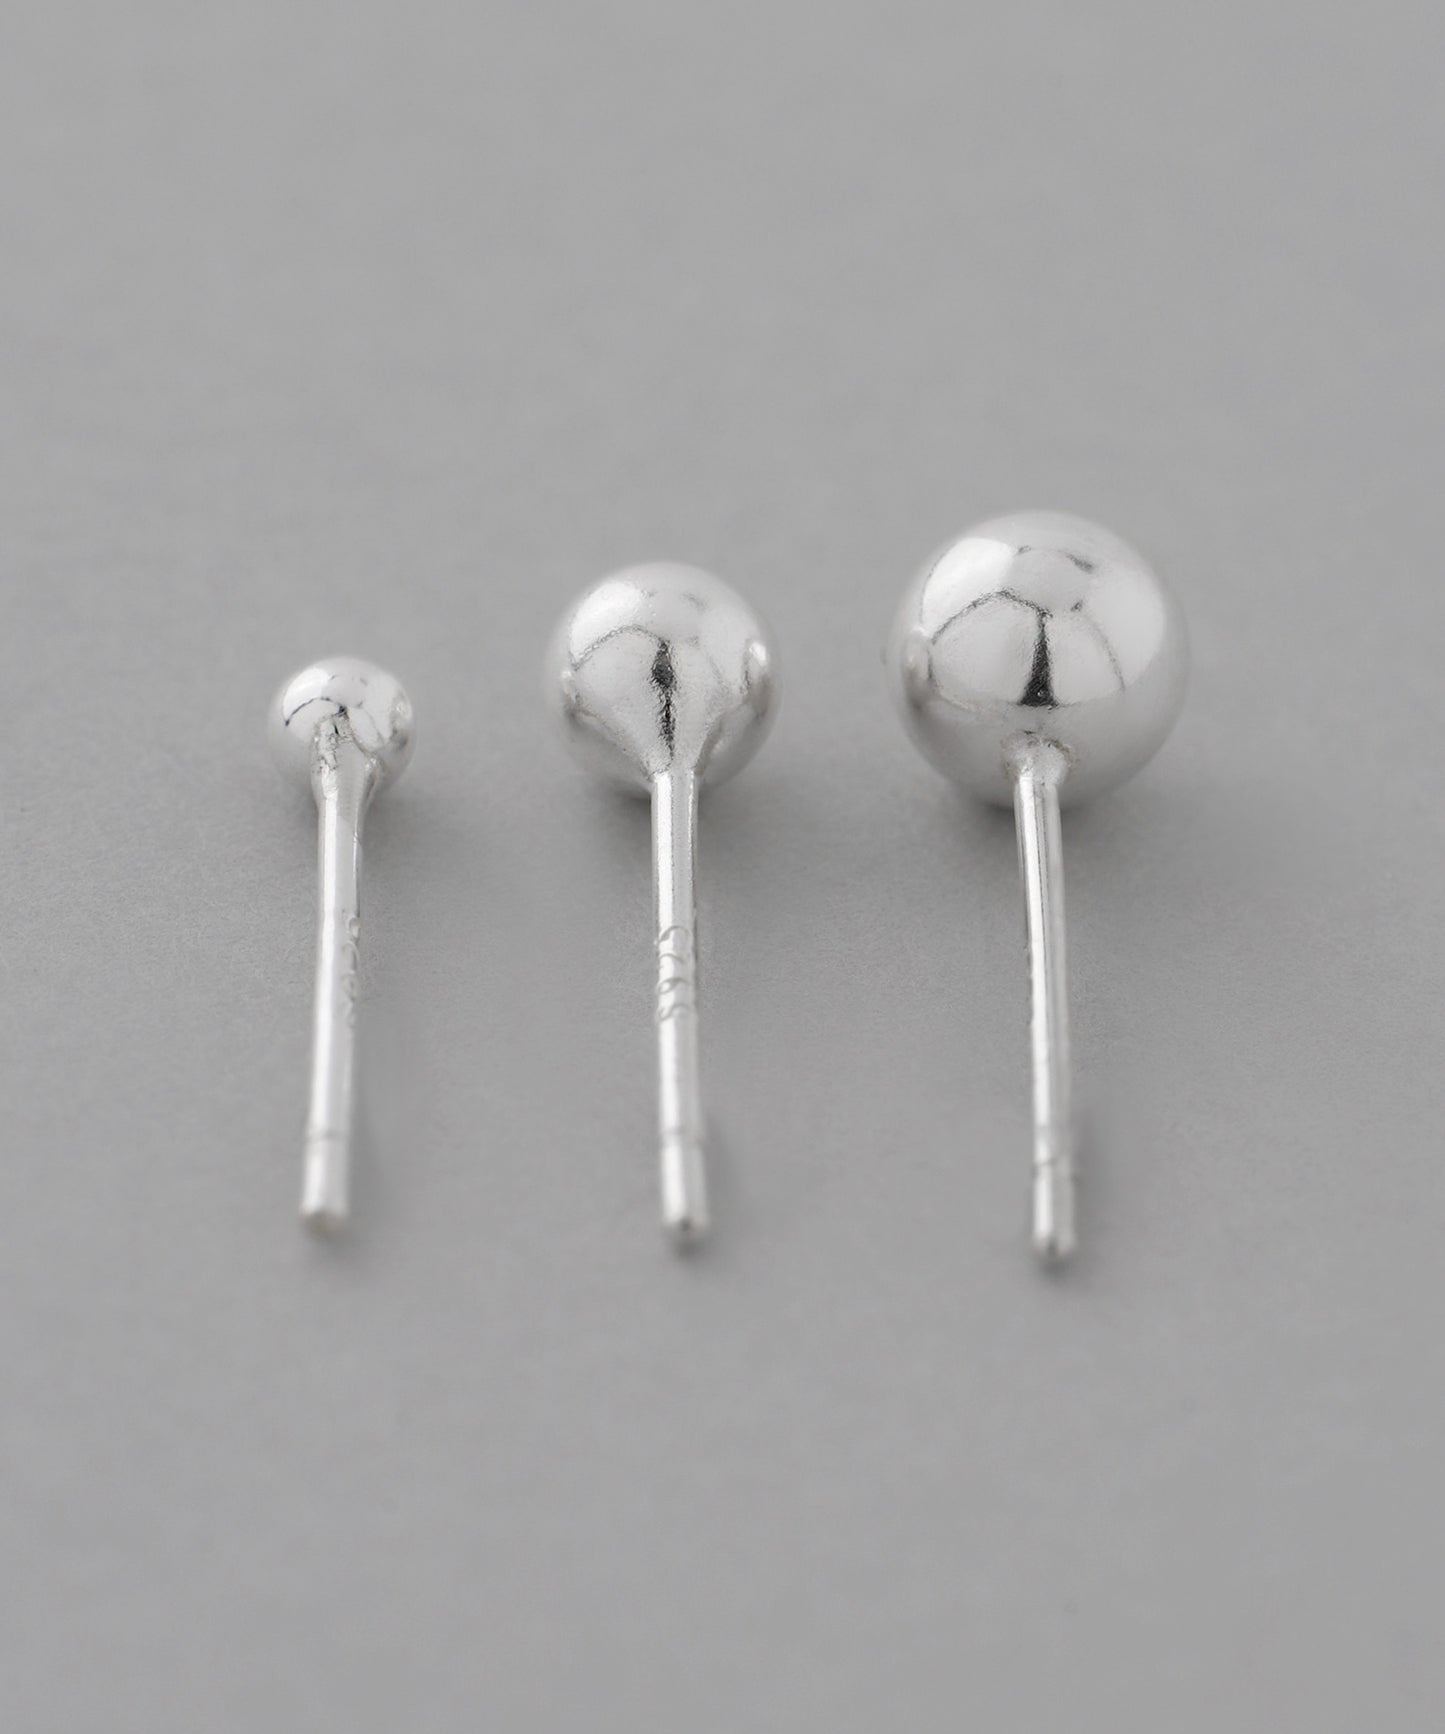 Sphere Earrings [set of 3 pairs][925 silver]